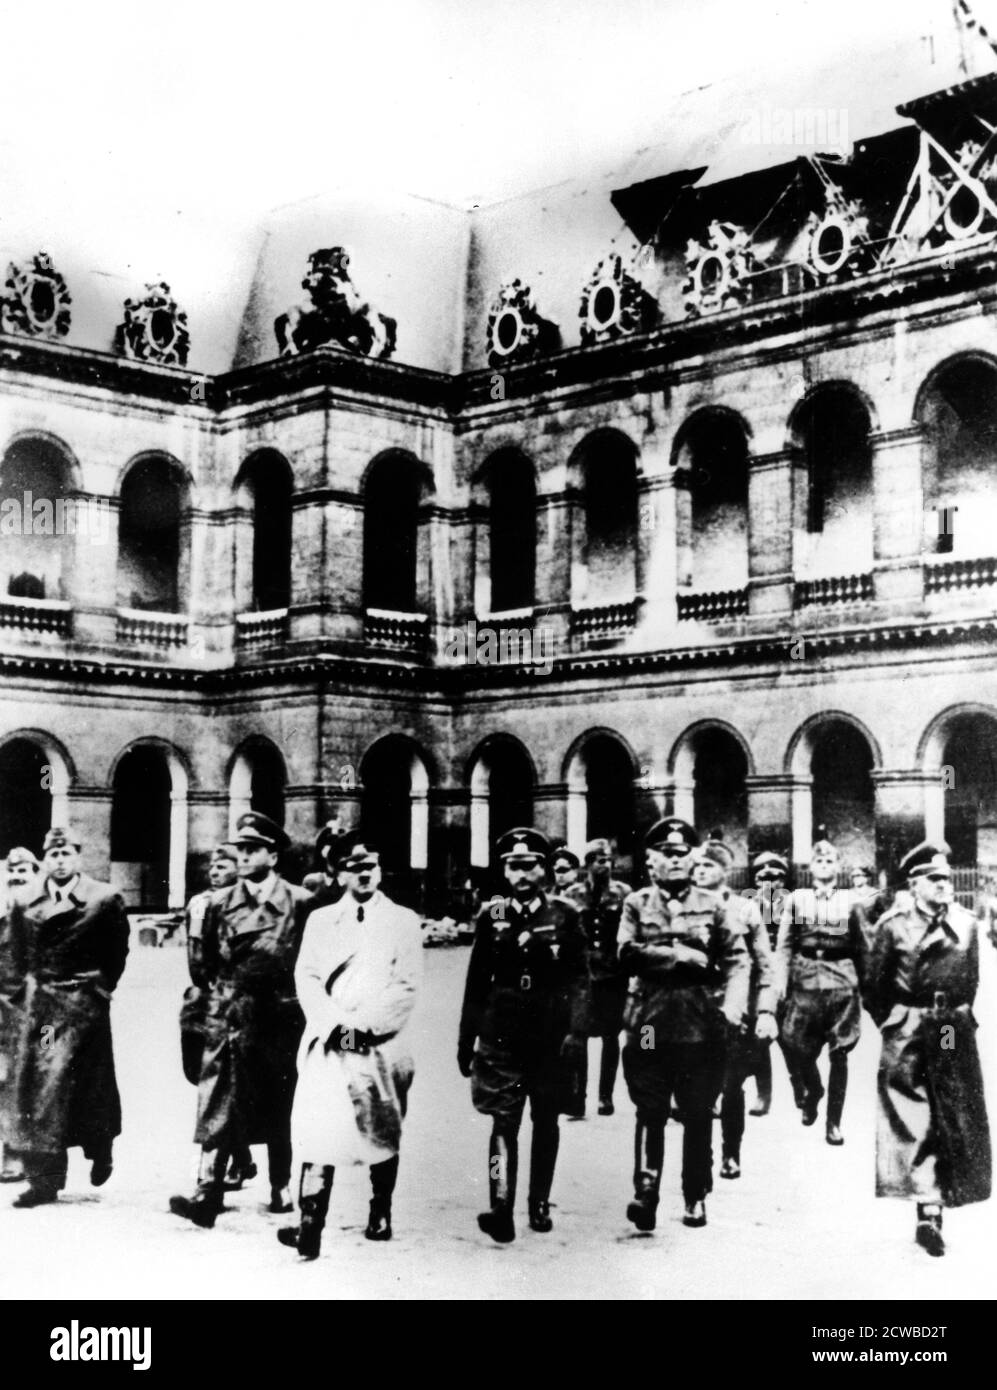 Adolf Hitler besucht die besetzte Stadt Paris, 1940. Begleitet wird er von General Hans Speidel, der im Juli 1944 an dem Attentat auf Hitler beteiligt war. Speidel überlebte die Repressalien nach dem Komplott und wurde nach dem Krieg ein hochrangiger General in der NATO. Der Fotograf ist unbekannt. Stockfoto